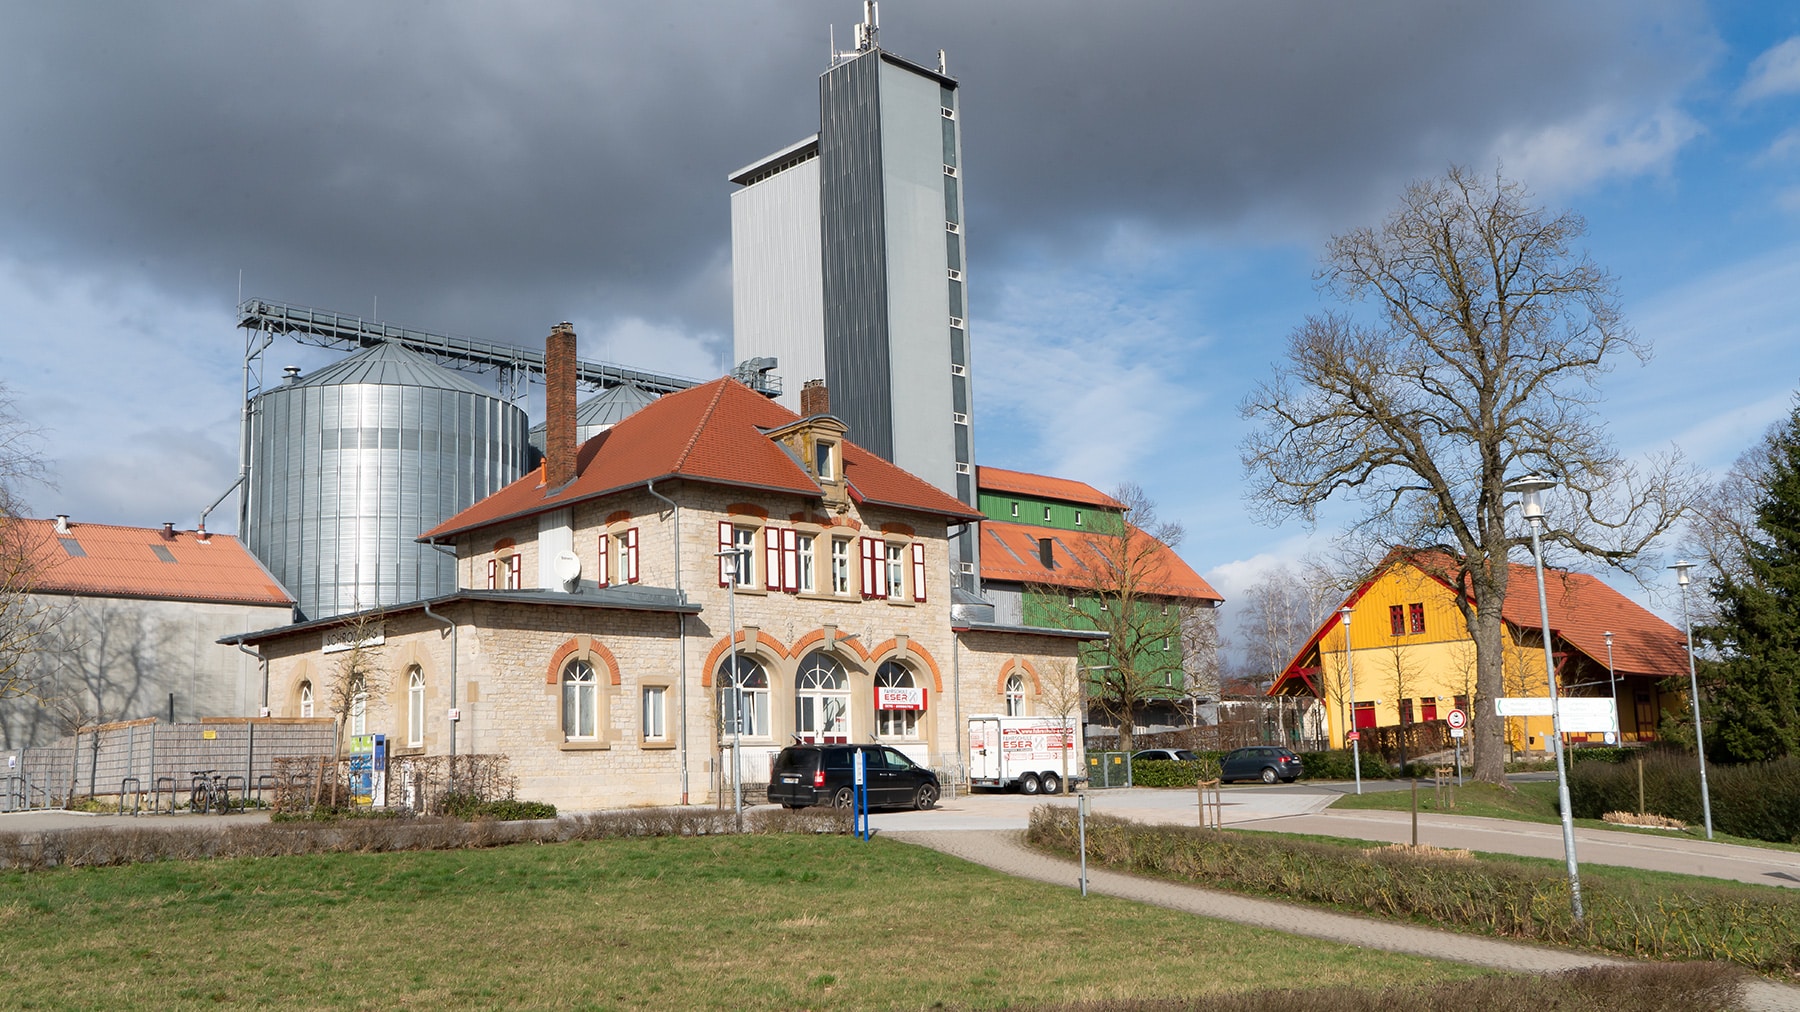 Bahnhof mit LBV-Turm im Hintergrund